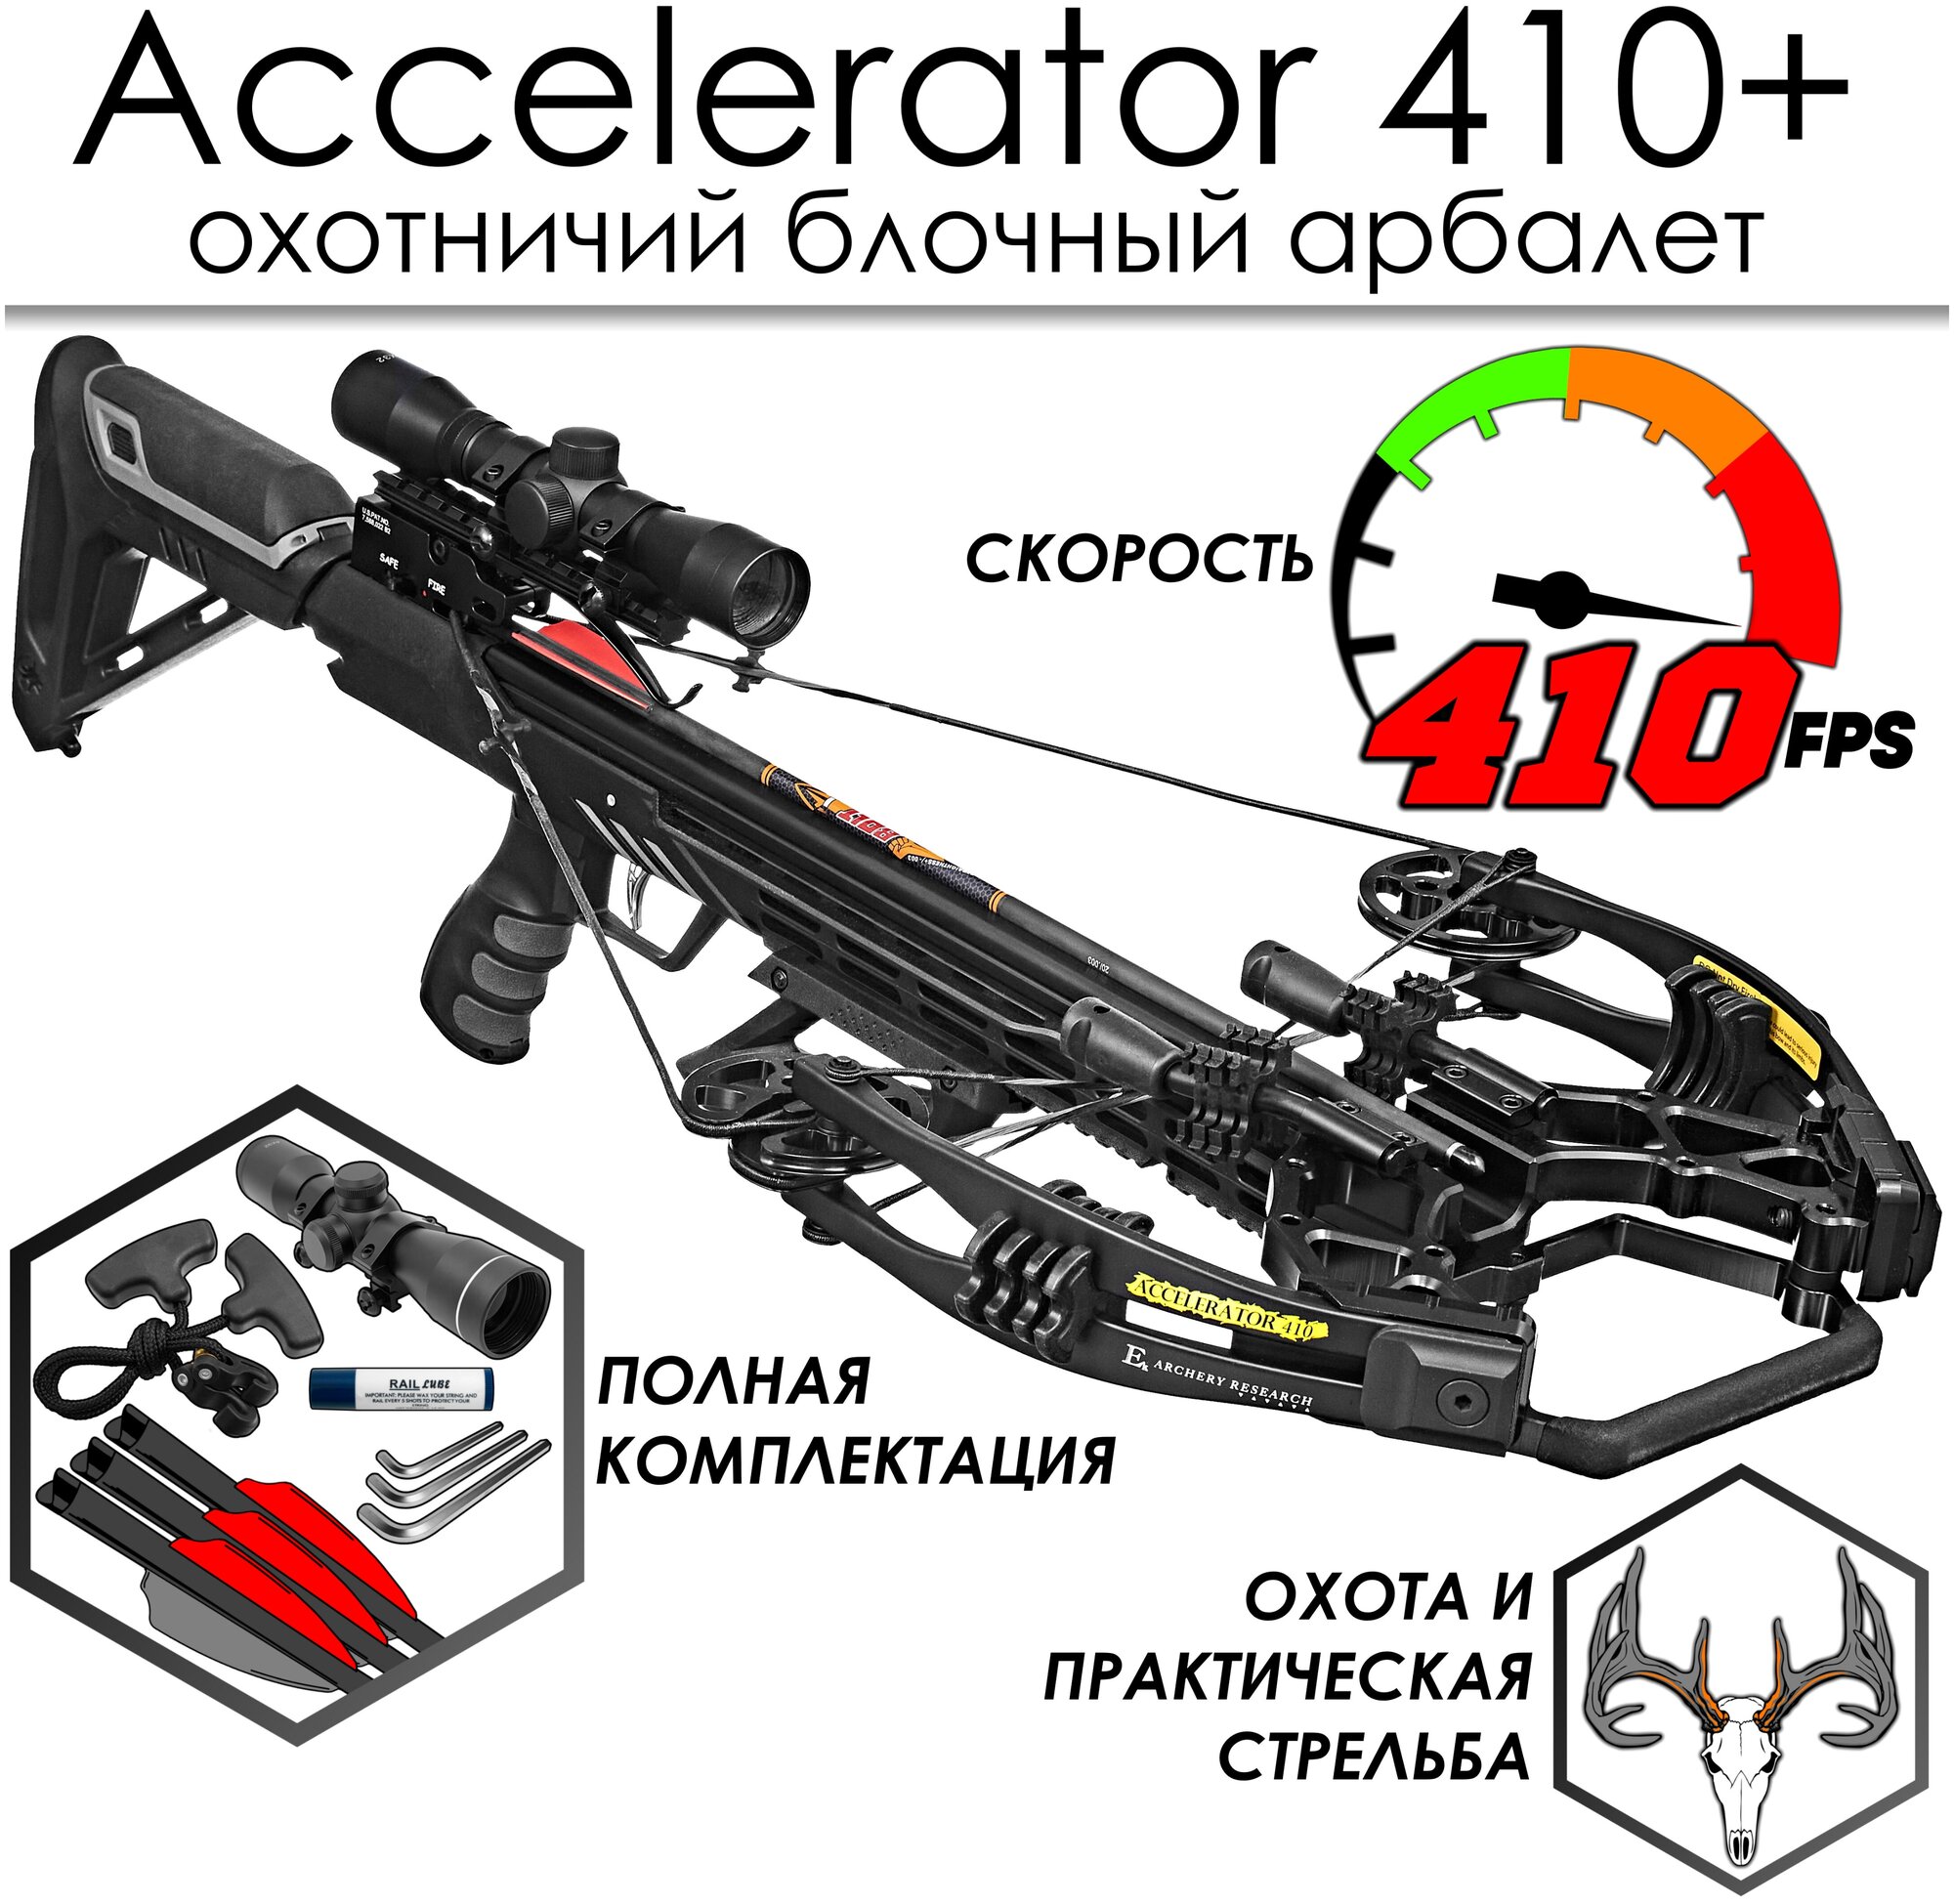 Арбалет блочный Ek Accelerator 410 Plus черный (c комплектом)